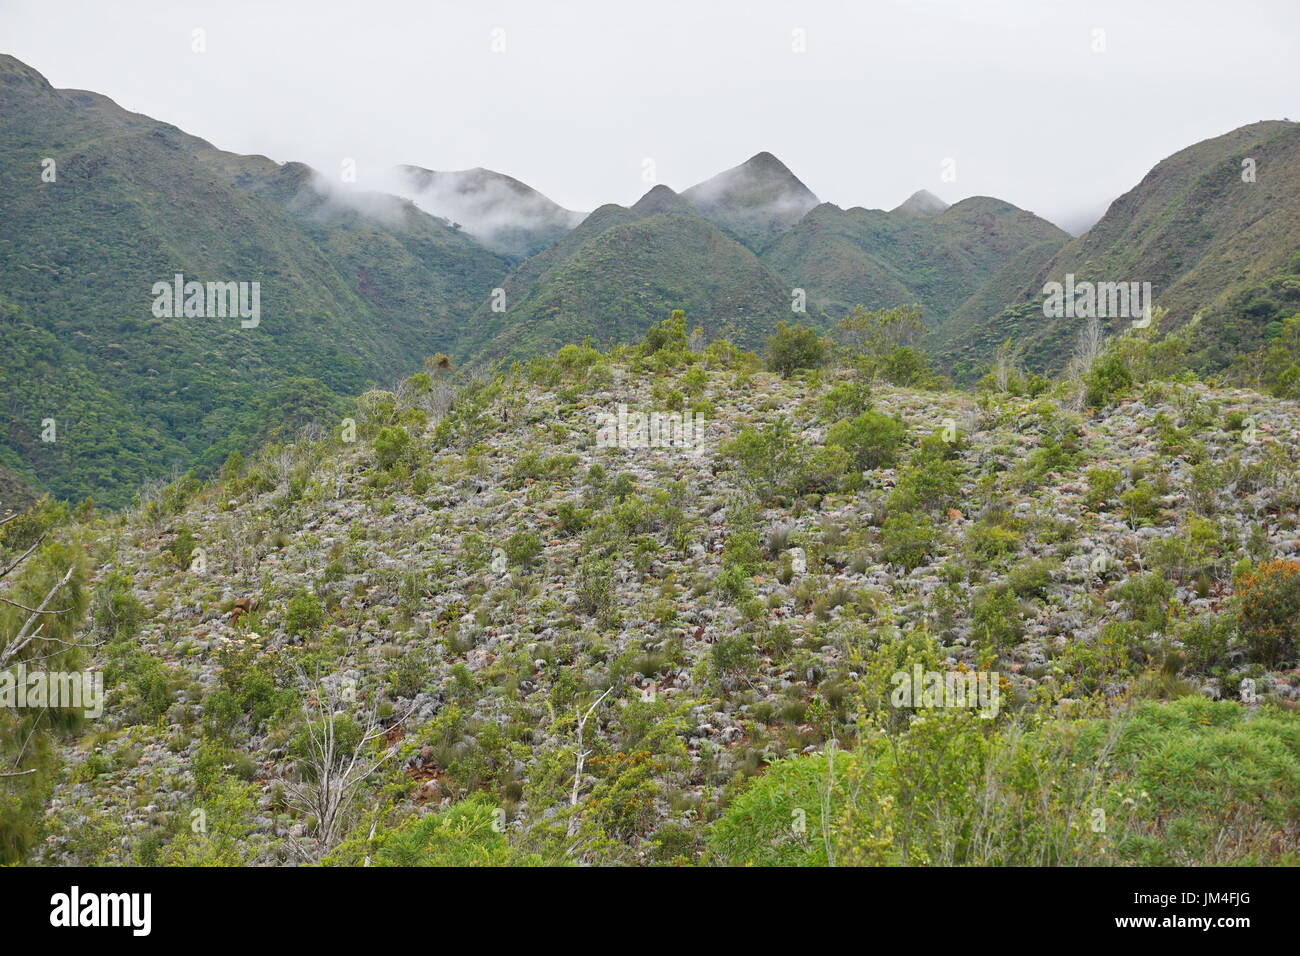 Vegetazione sulle pendici della montagna, Dumbea, Grande-Terre isola, Nuova Caledonia, South Pacific Oceania Foto Stock